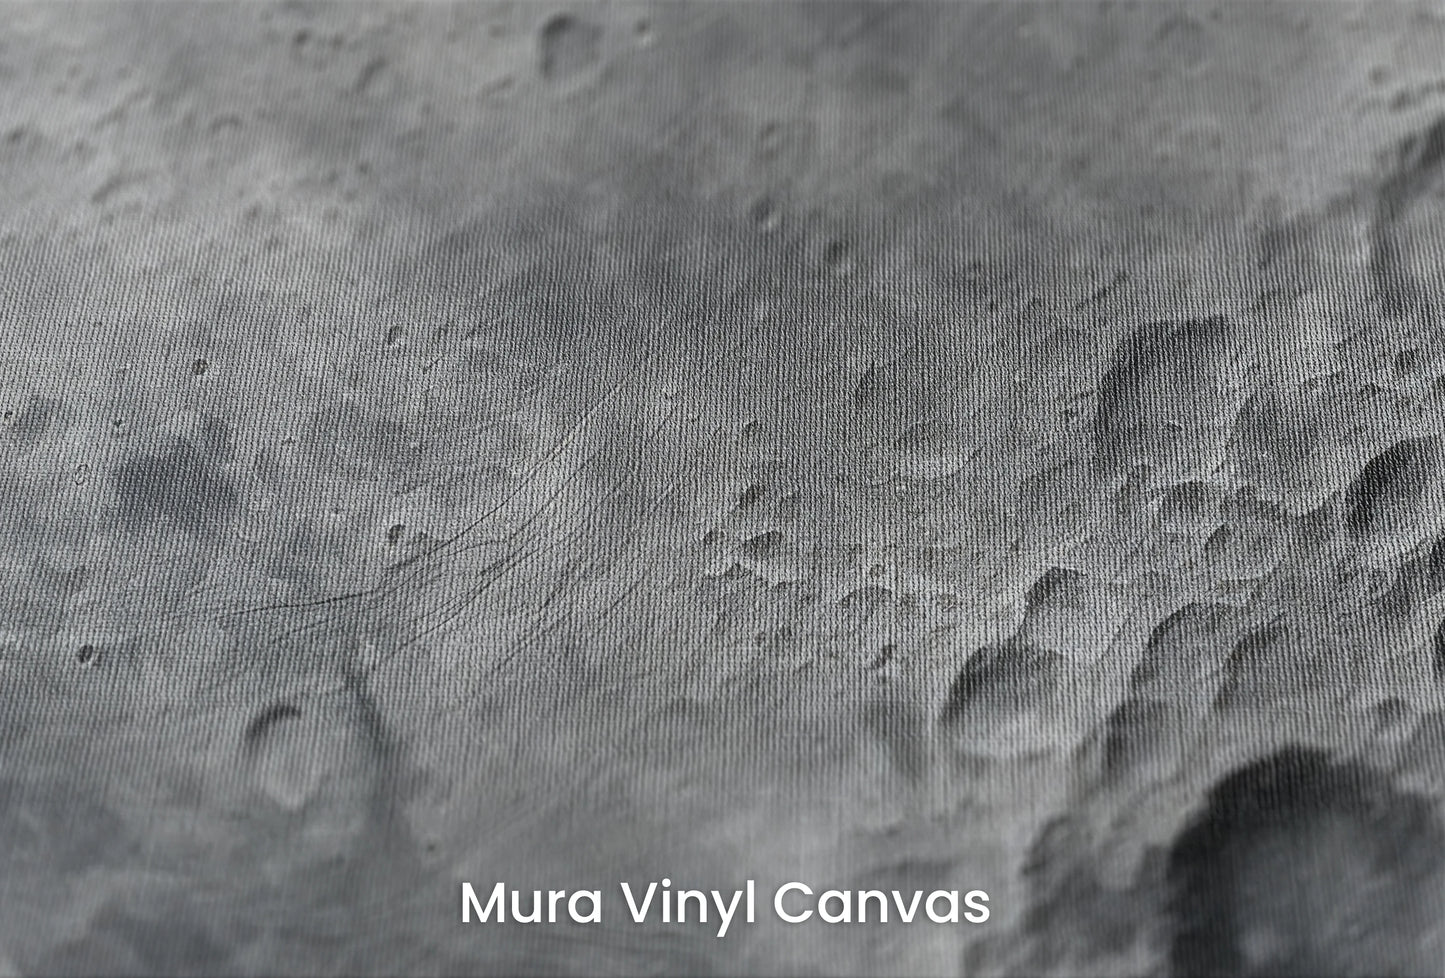 Zbliżenie na artystyczną fototapetę o nazwie Lunar Detail na podłożu Mura Vinyl Canvas - faktura naturalnego płótna.